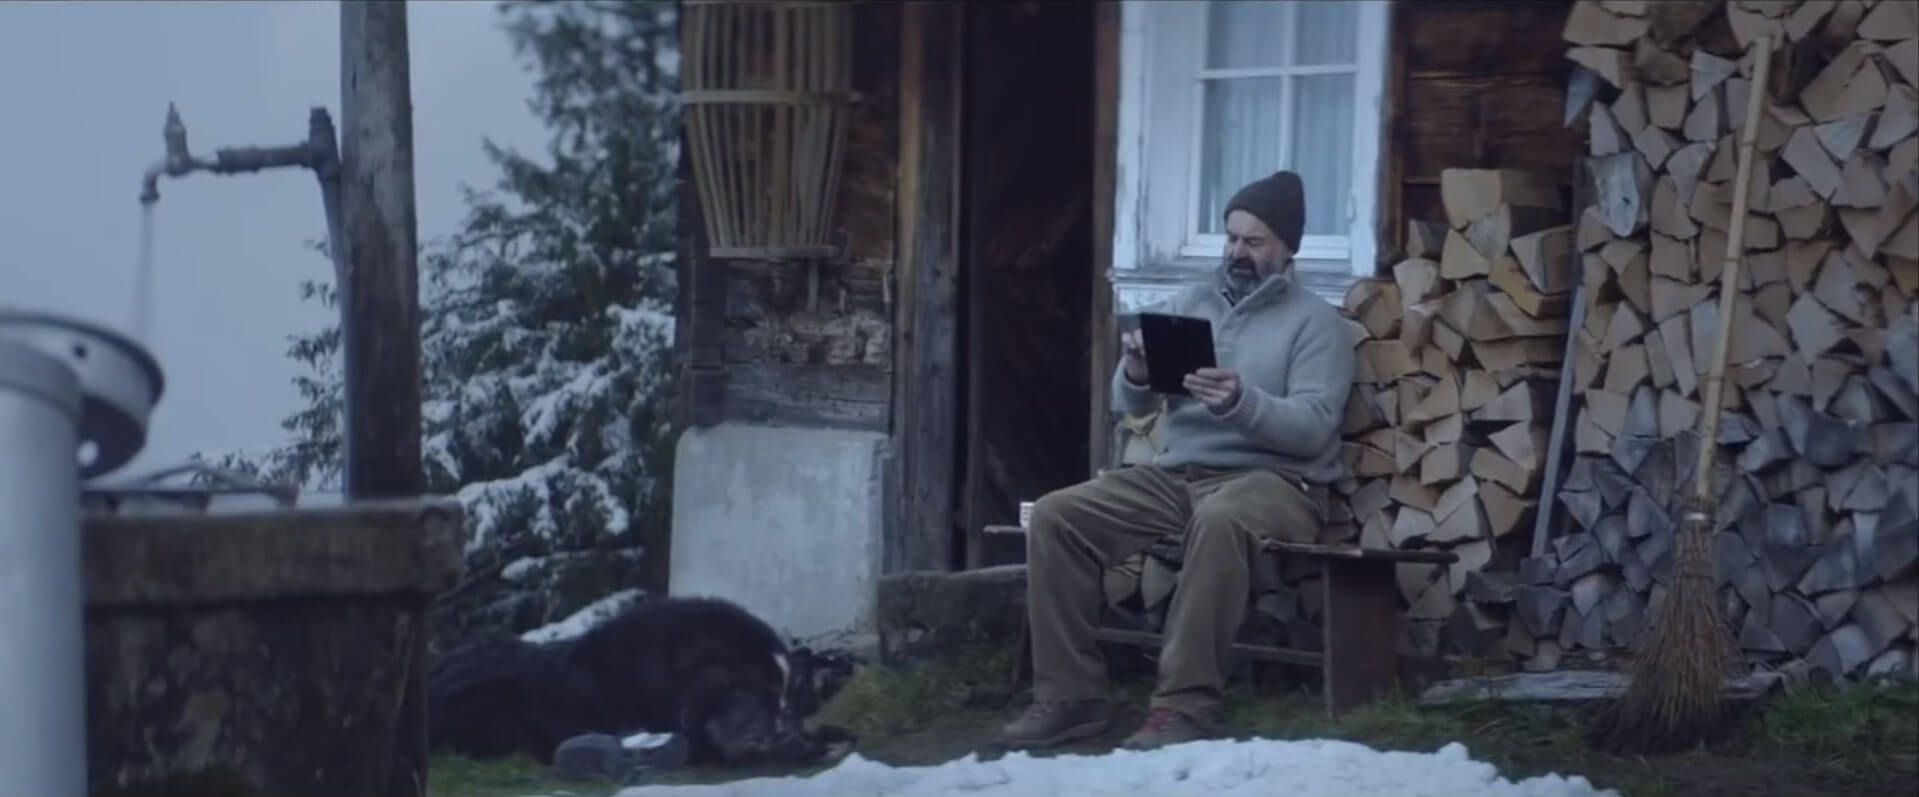 Mann sitzt vor einem Haus und nutzt eine mobile App